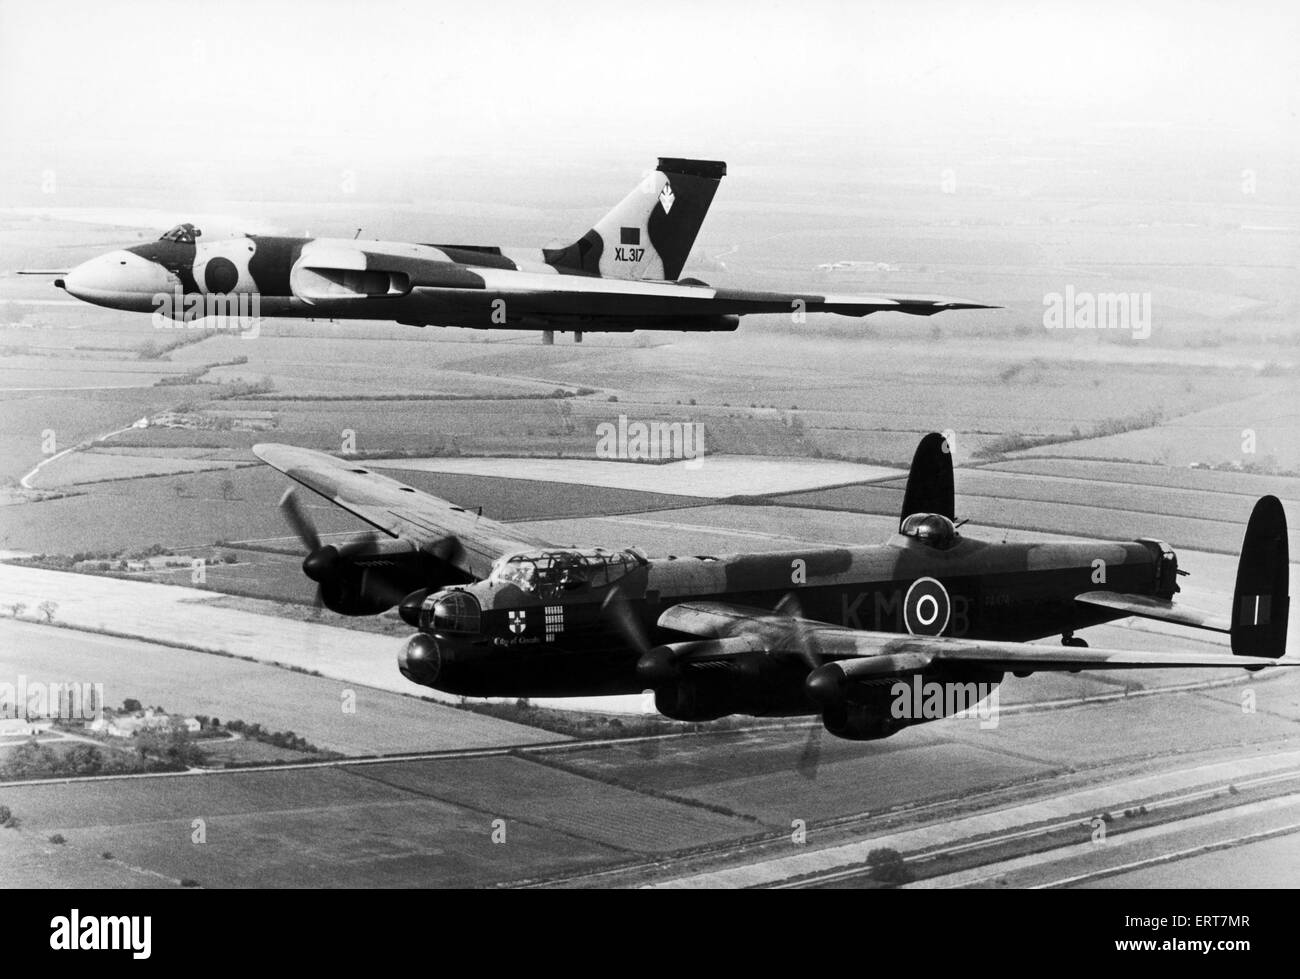 Avro Lancaster Bomber vol commémoratif sur Derwent Barrage, vu ici escorté par un Avro Vulcan au cours de l'affichage à l'air de Coventry Baginton. Août 1977. Banque D'Images